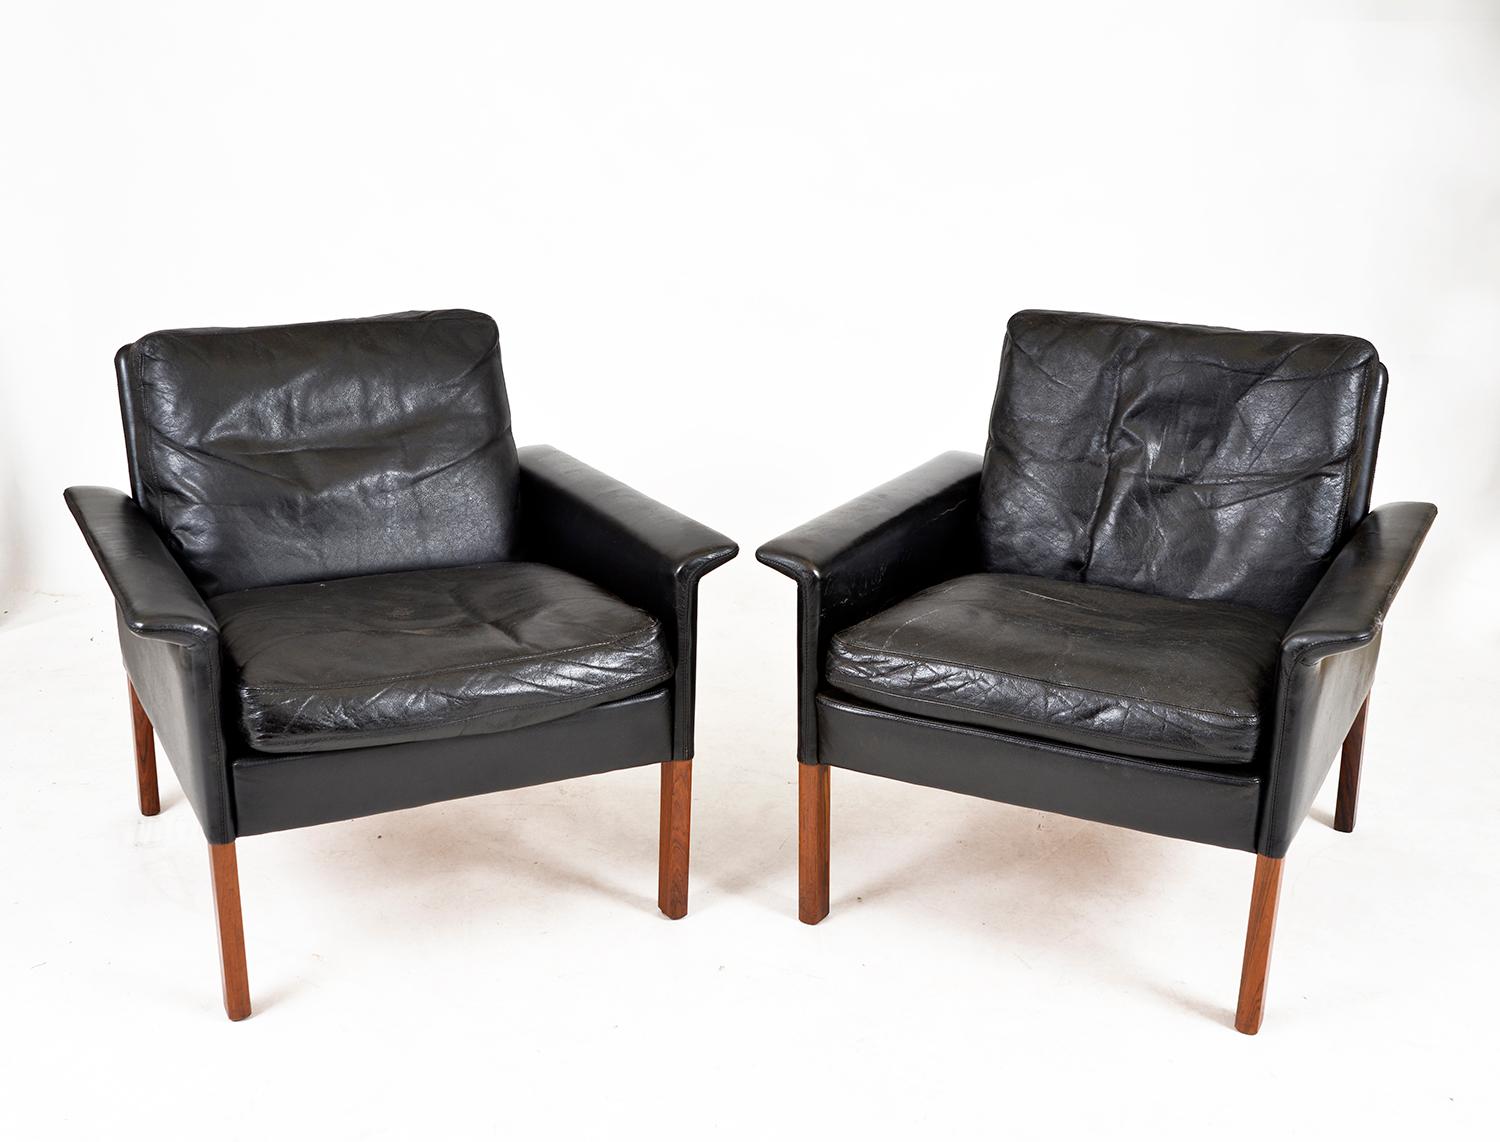 Scandinavian Modern Pair Black Leather Lounge Chairs Model 500 by Hans Olsen CS Møbler Denmark 1960s